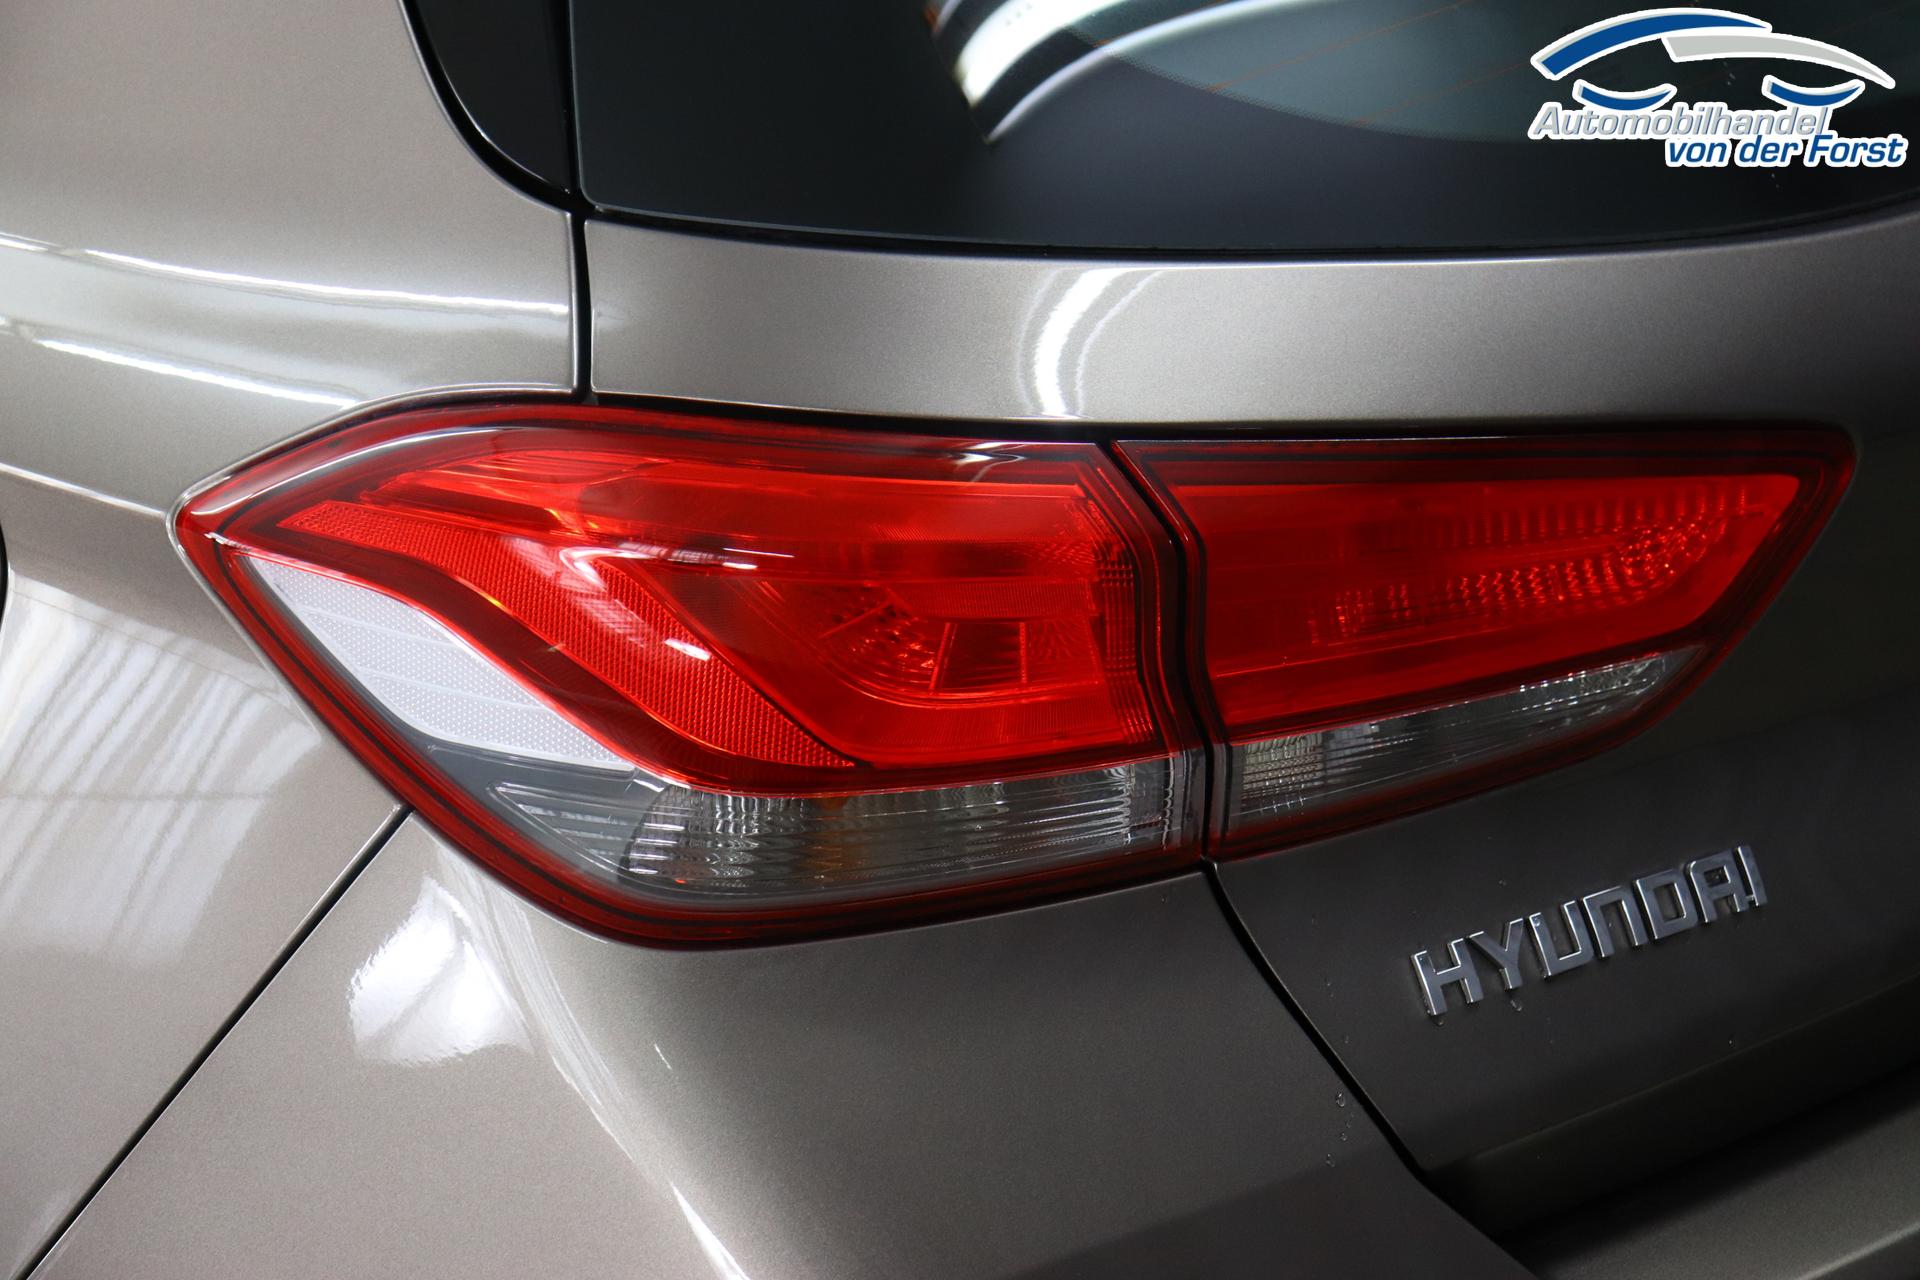 Hyundai i30 Comfort 1.0 T-GDi 7DCT FL MY23, Klimaanlage, Sitzheizung,  Lederlenkrad, Radio DAB, Freisprecheinrichtung, Lichtsensor, Tempomat,  Einparkhilfe hinten, Nebelscheinwerfer, 16 Zoll Leichtmetallfelgen, uvm.  Reimport EU-Neuwagen günstig kaufen